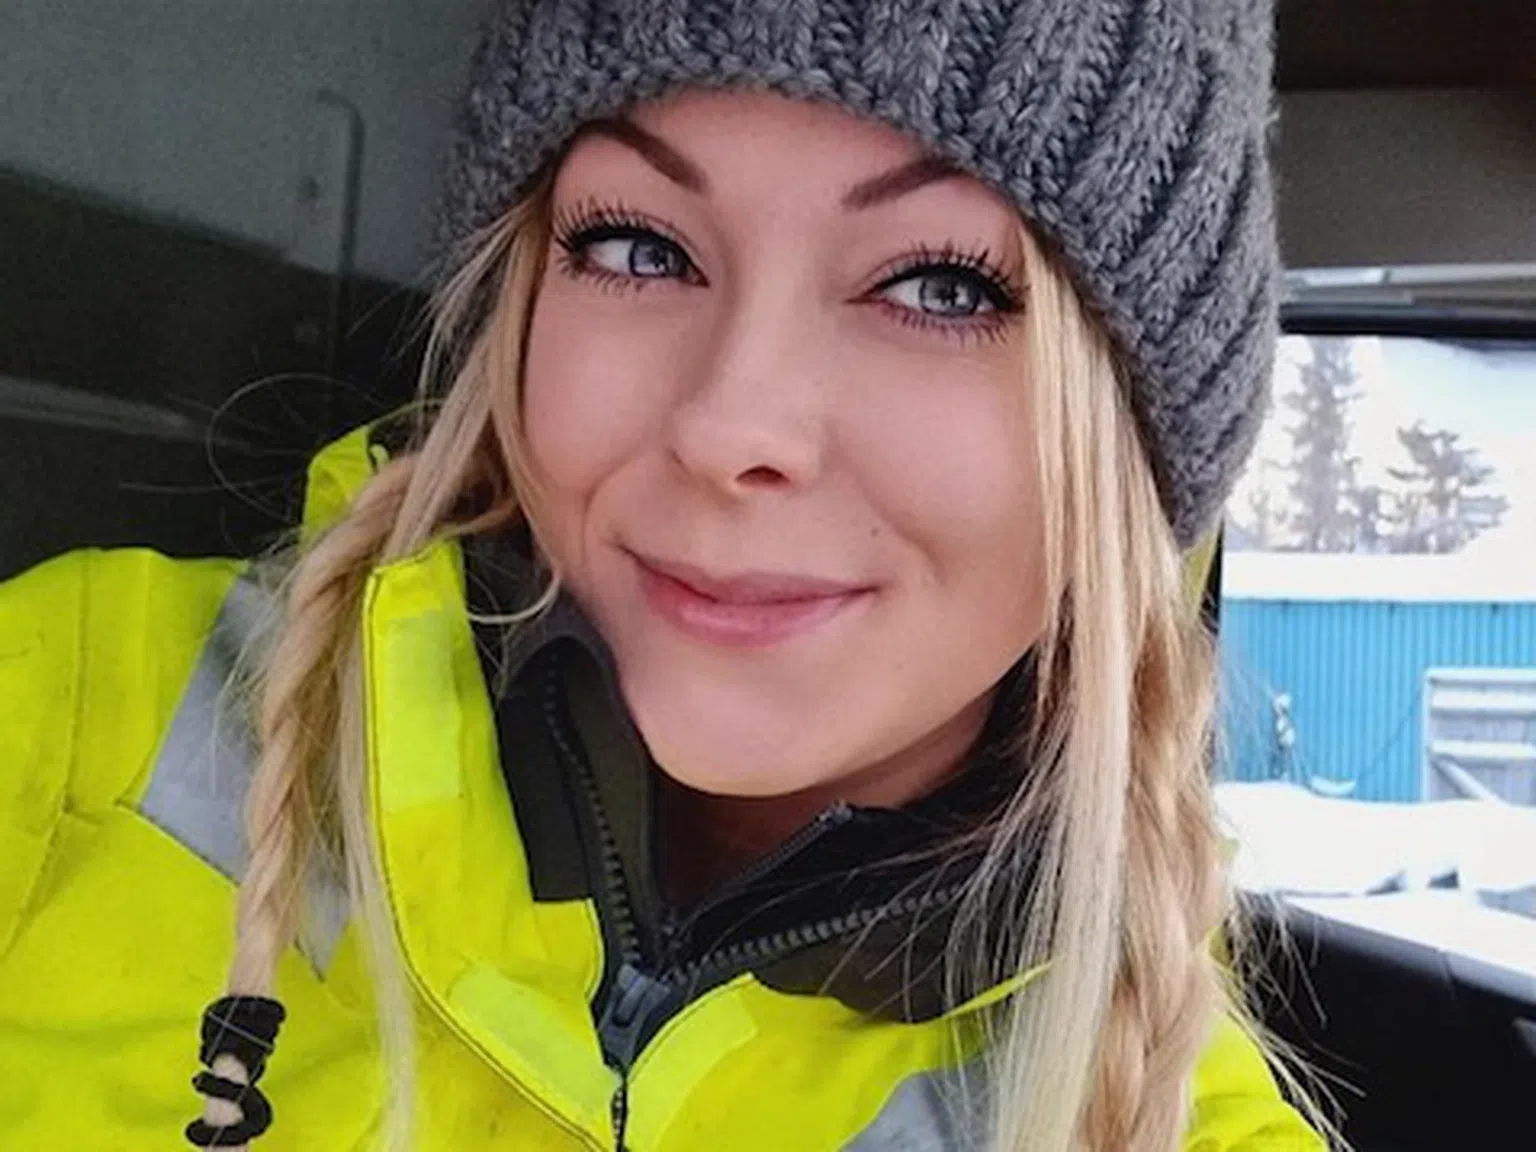 Няма да повярвате! Тази секси блондинка кара ТИР в снега и печели хиляди от видеата си